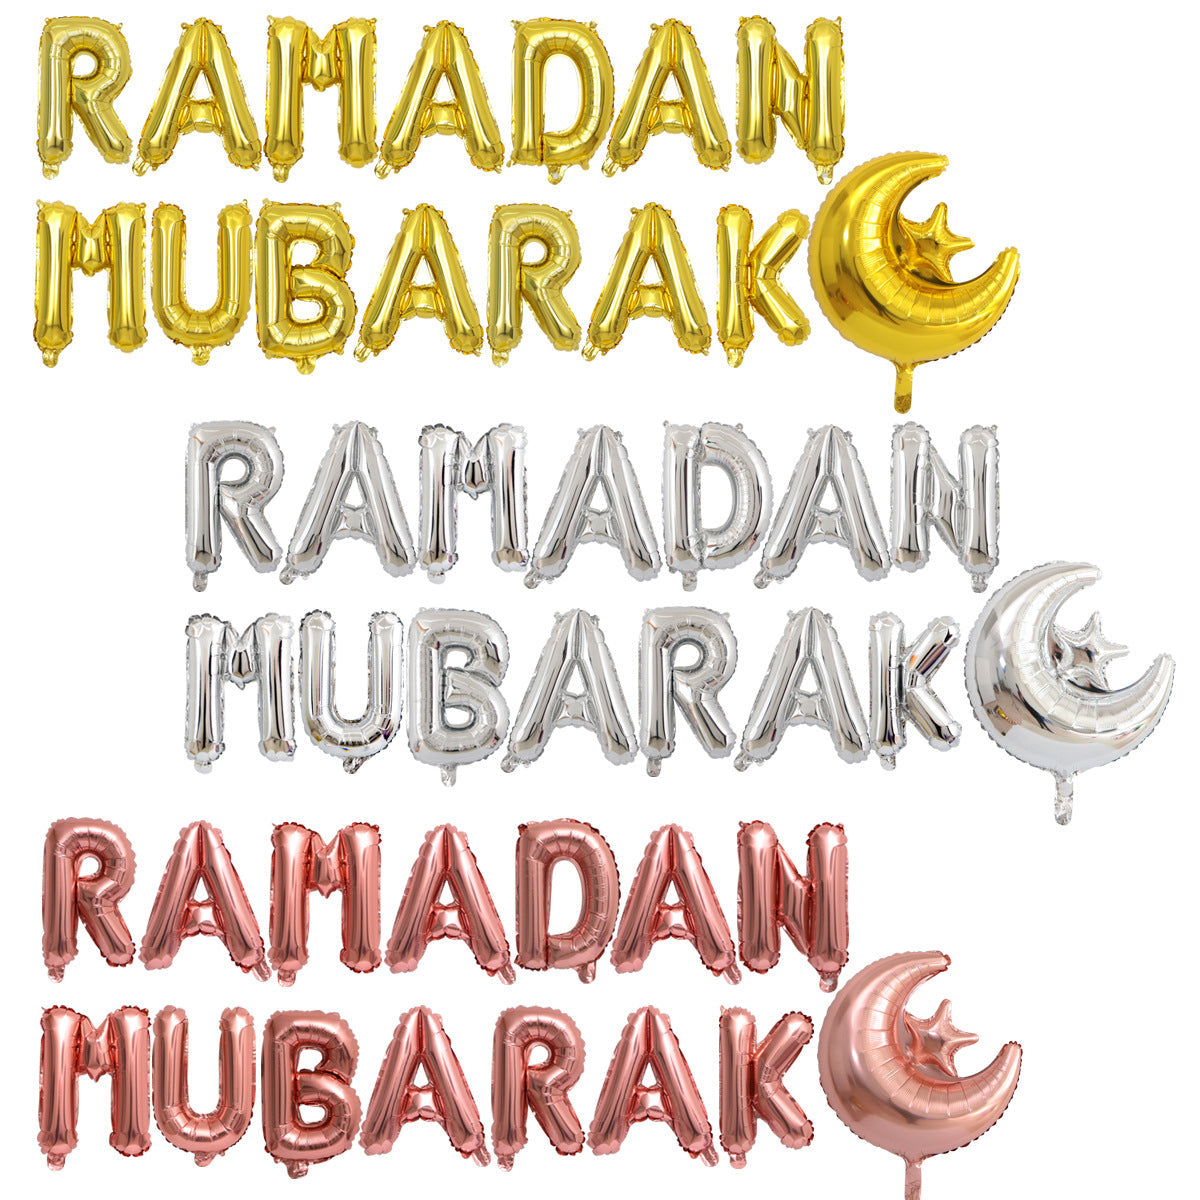 طقم بالون 15 قطعة - زينة رمضان شرقيات وإسلاميات مكتبة بنيان